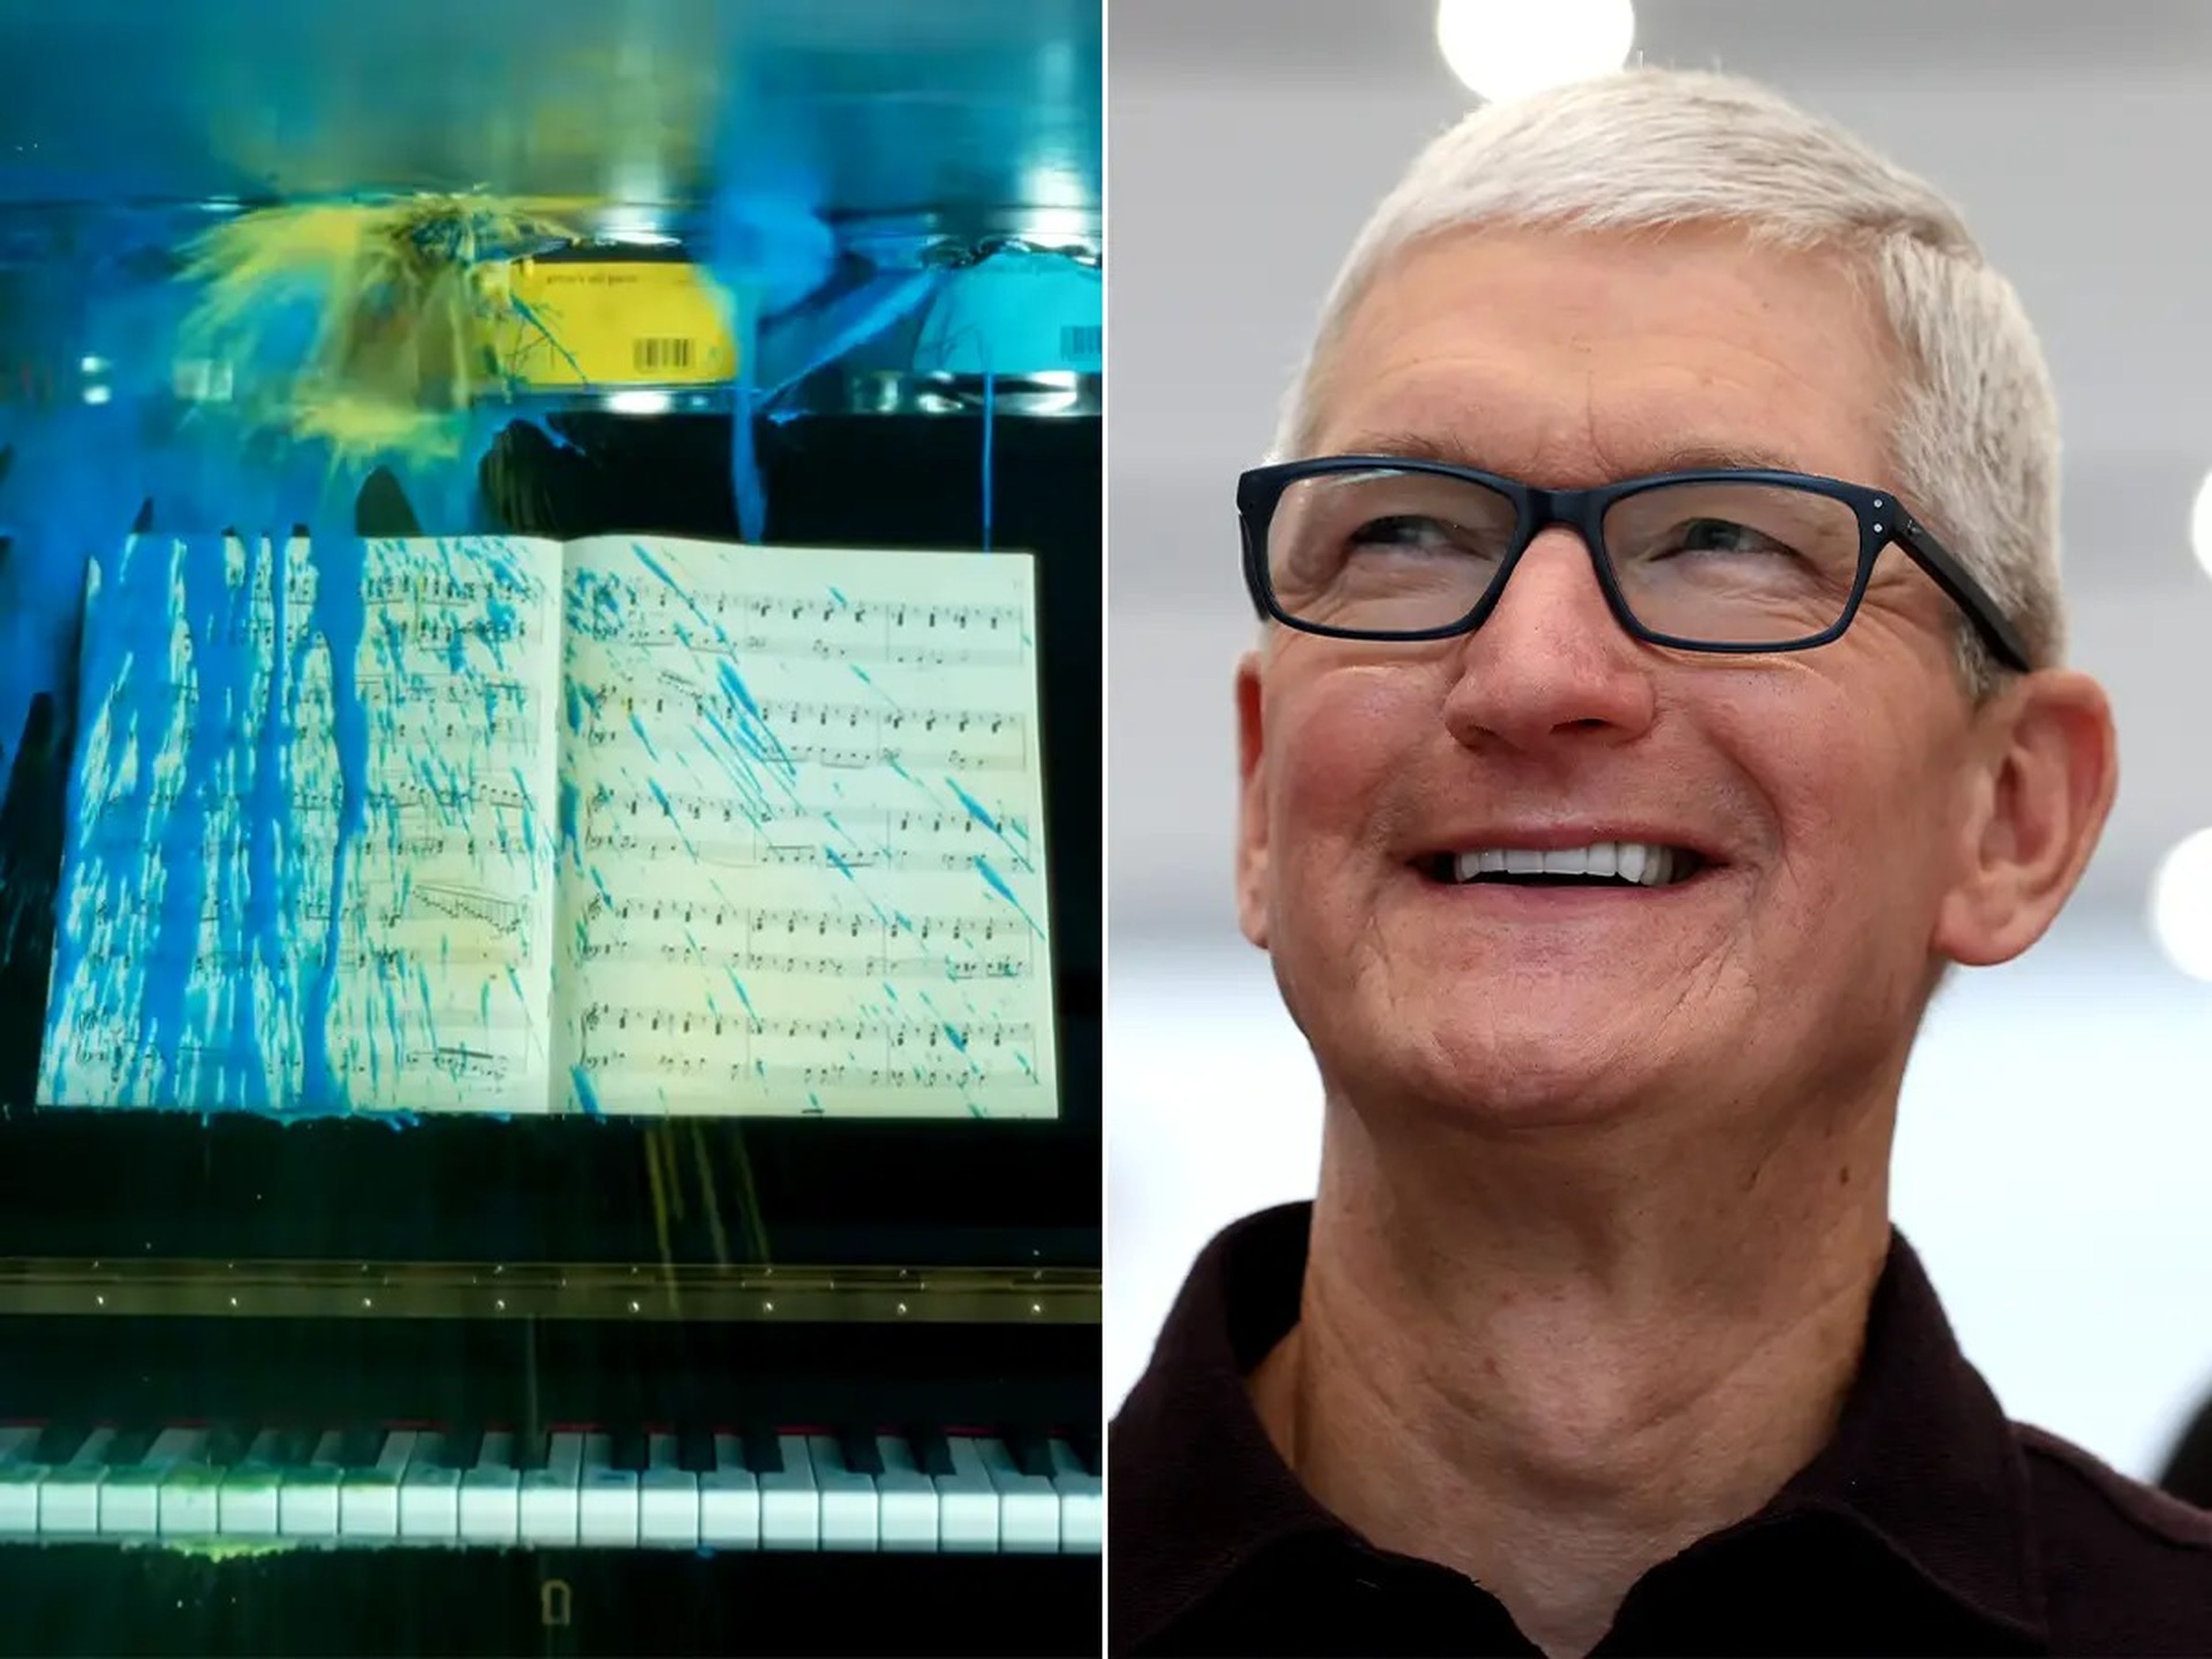 Una imagen de Tim Cook, CEO de Apple, sonriendo.